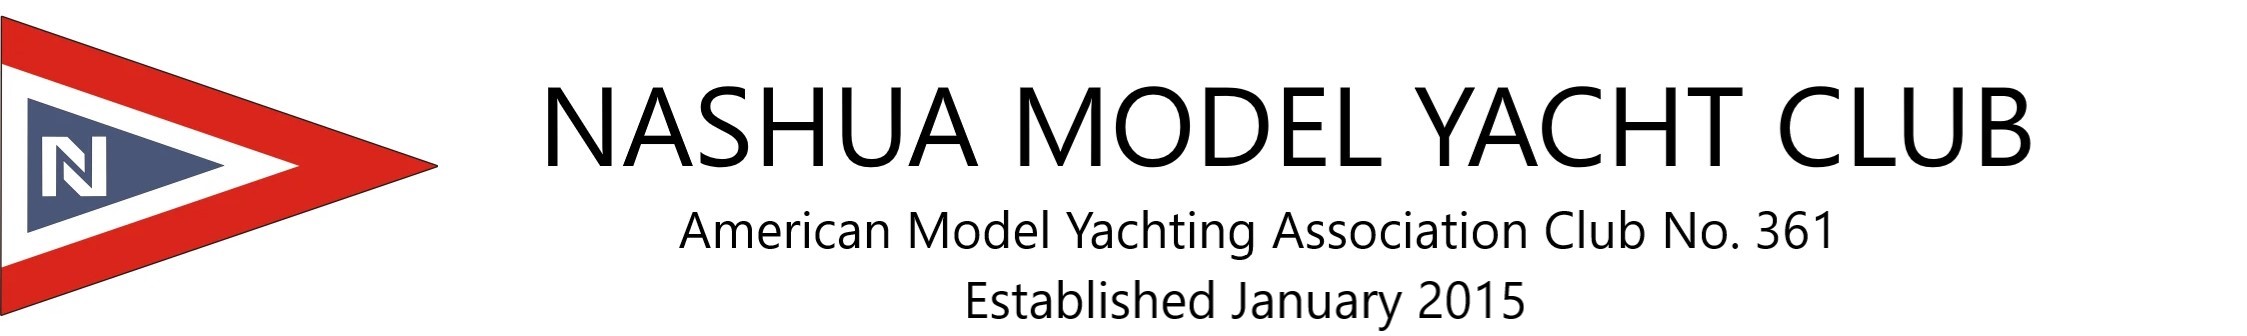 model yacht club near me